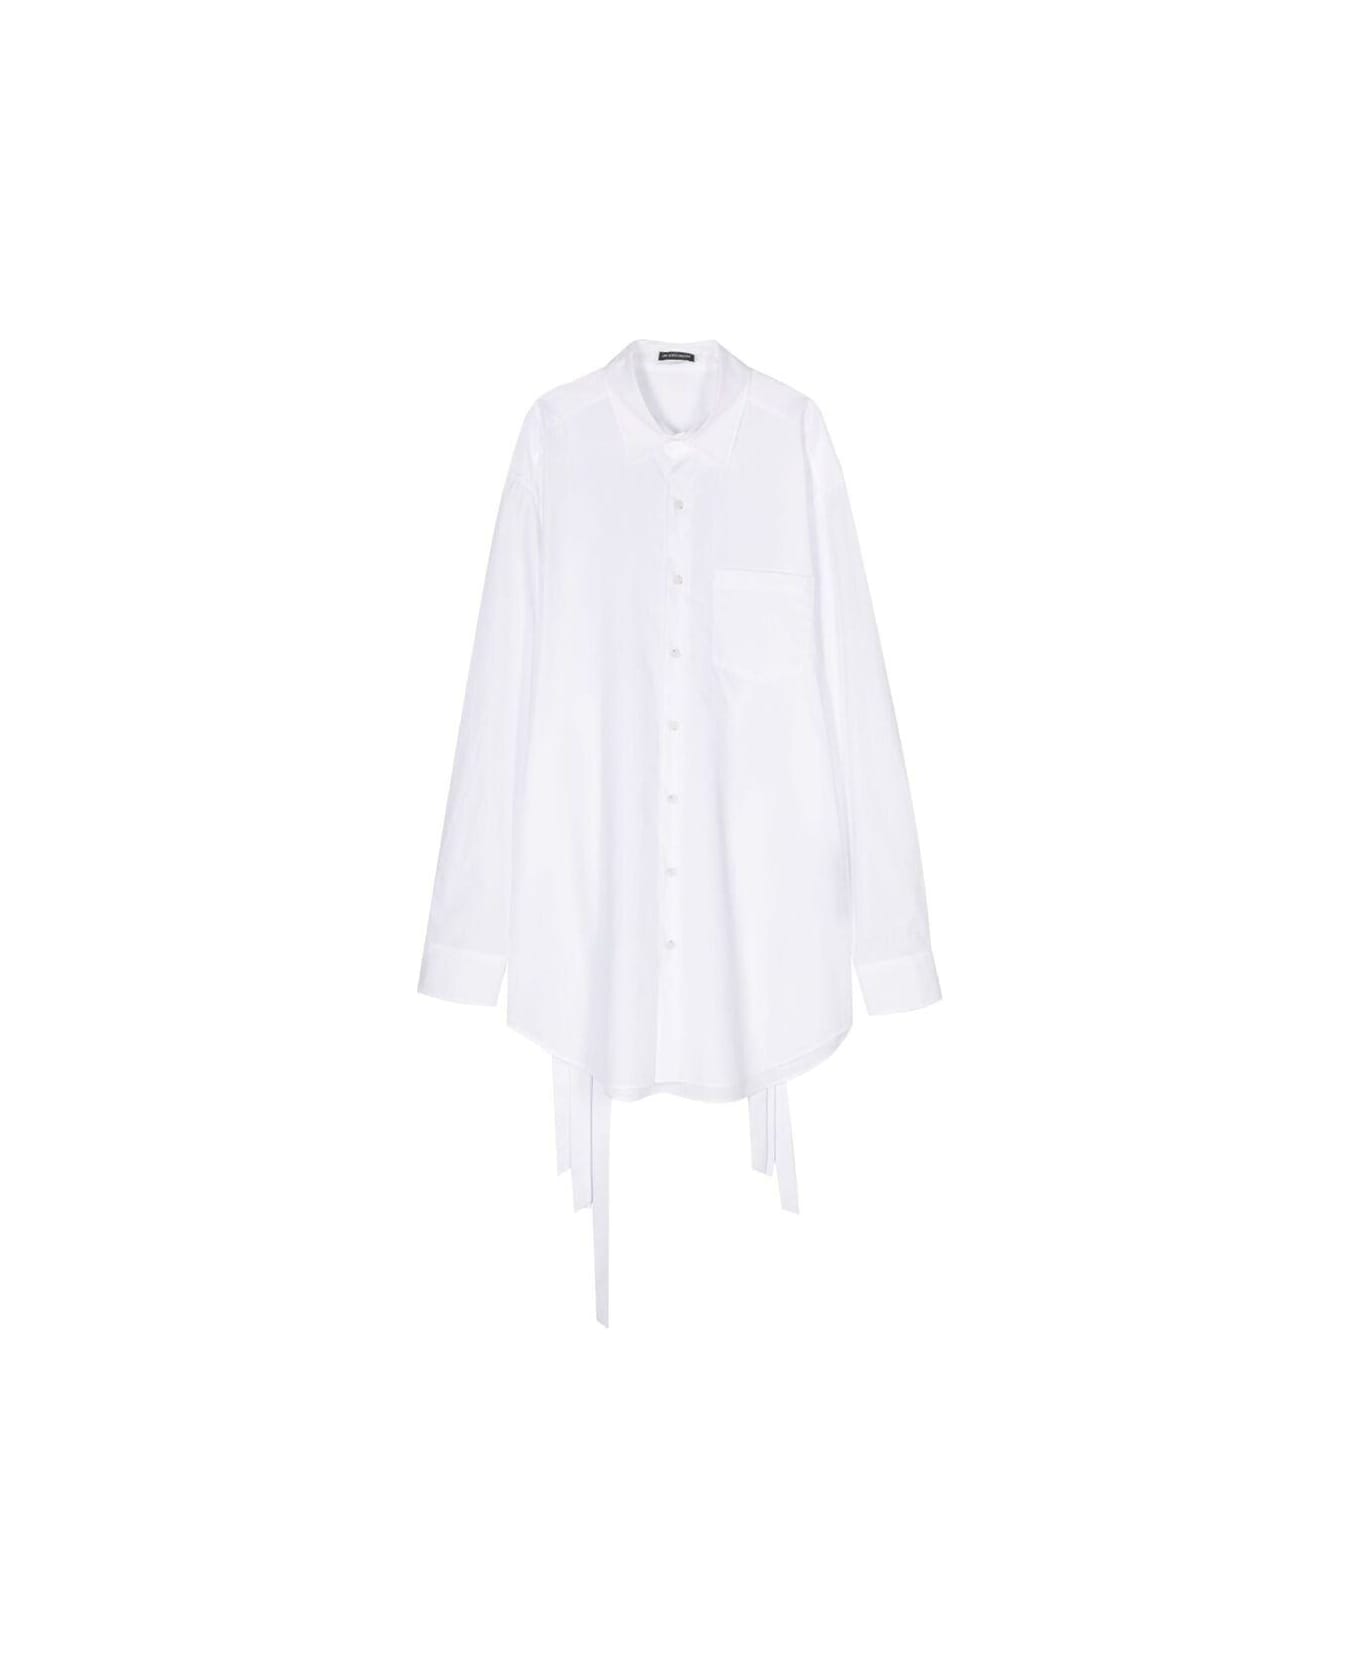 Ann Demeulemeester Buttoned Shirt - WHITE